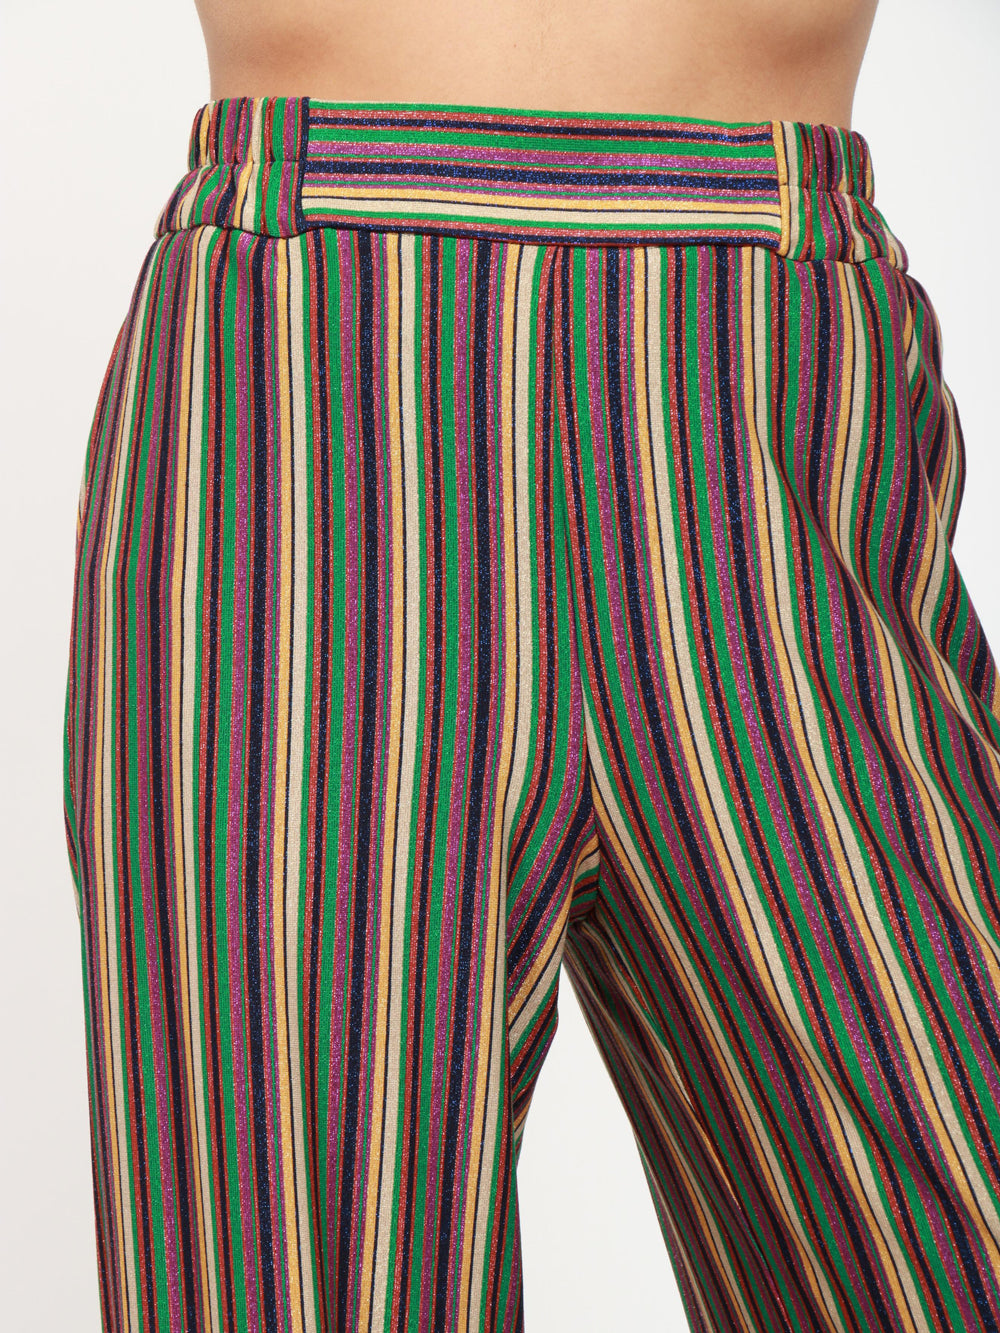 MOMONÌ Pantaloni Baccarat a Righe Multicolor con Lurex Multicolor